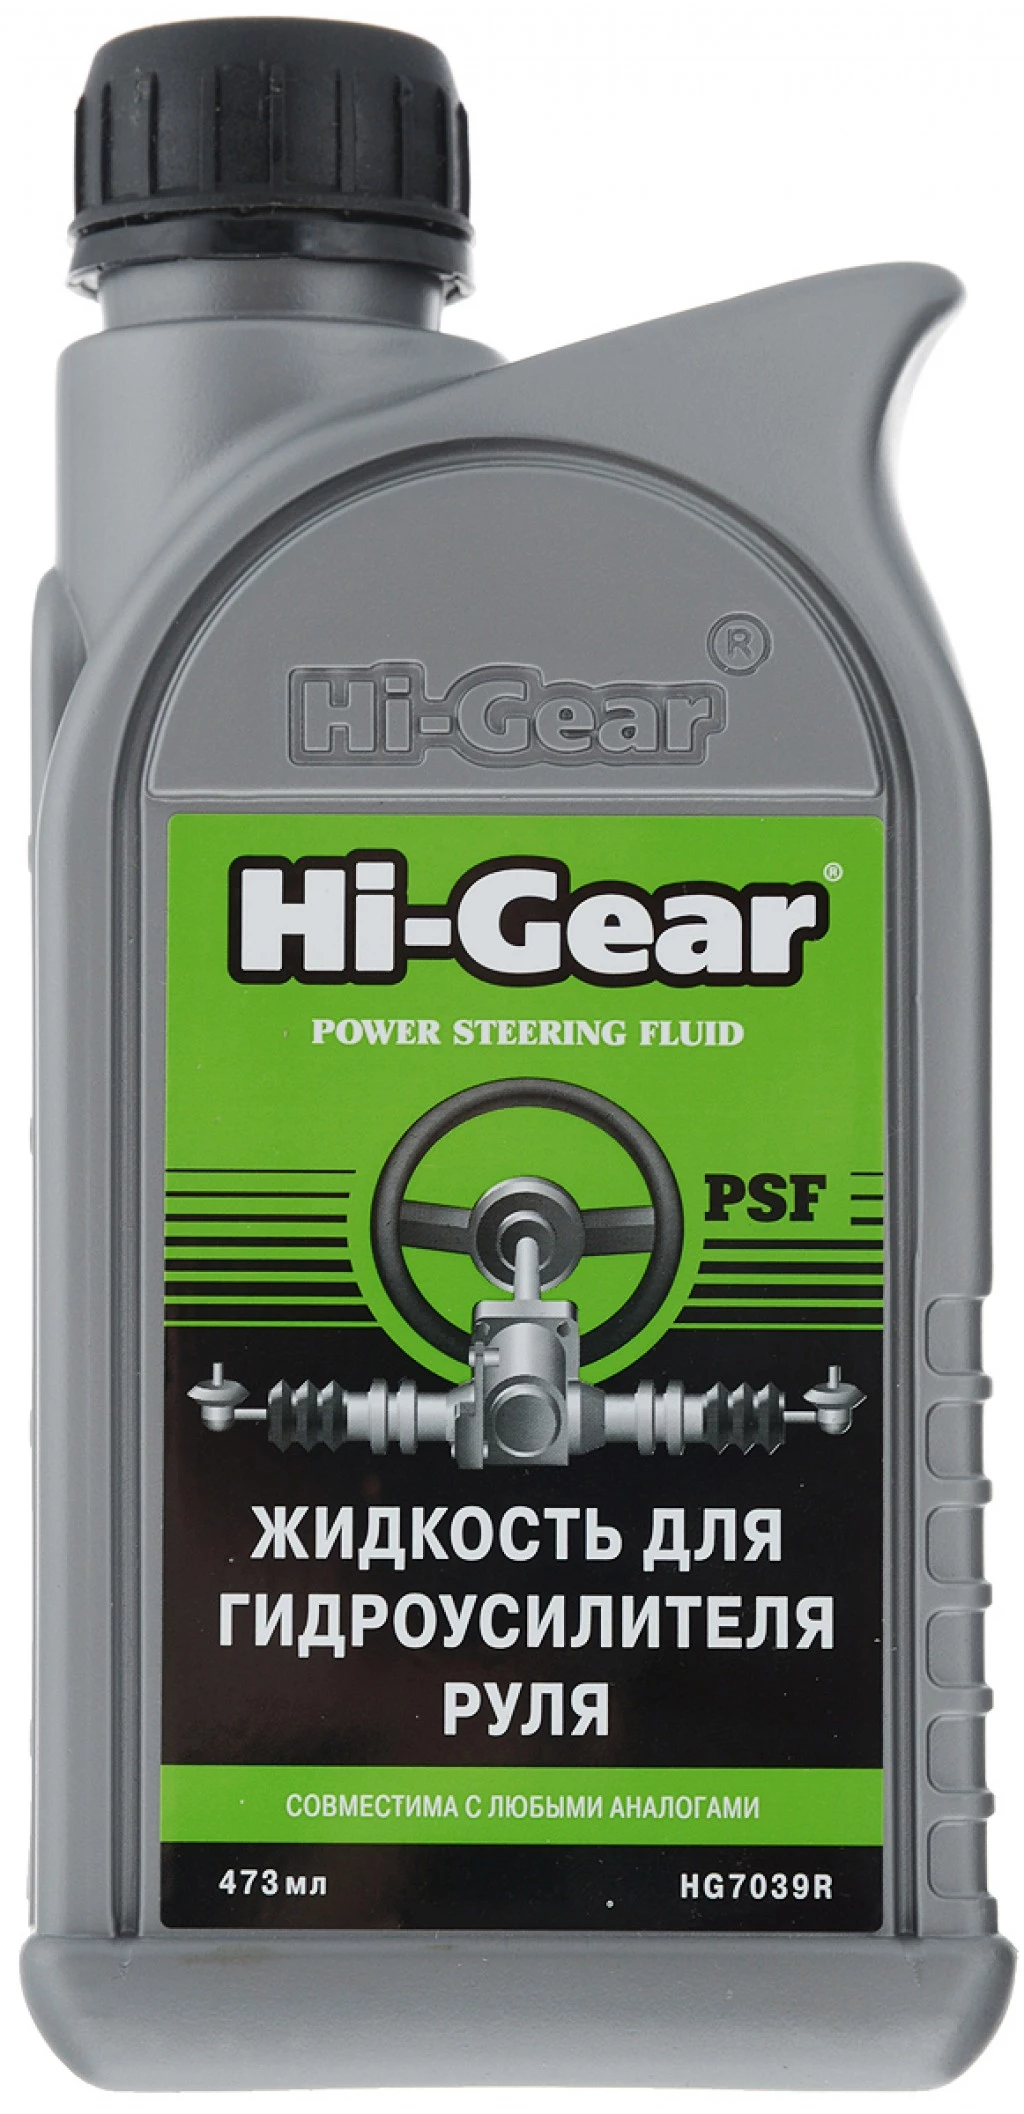 Жидкость для гидроусилителя руля Hi-Gear PSF 473 мл